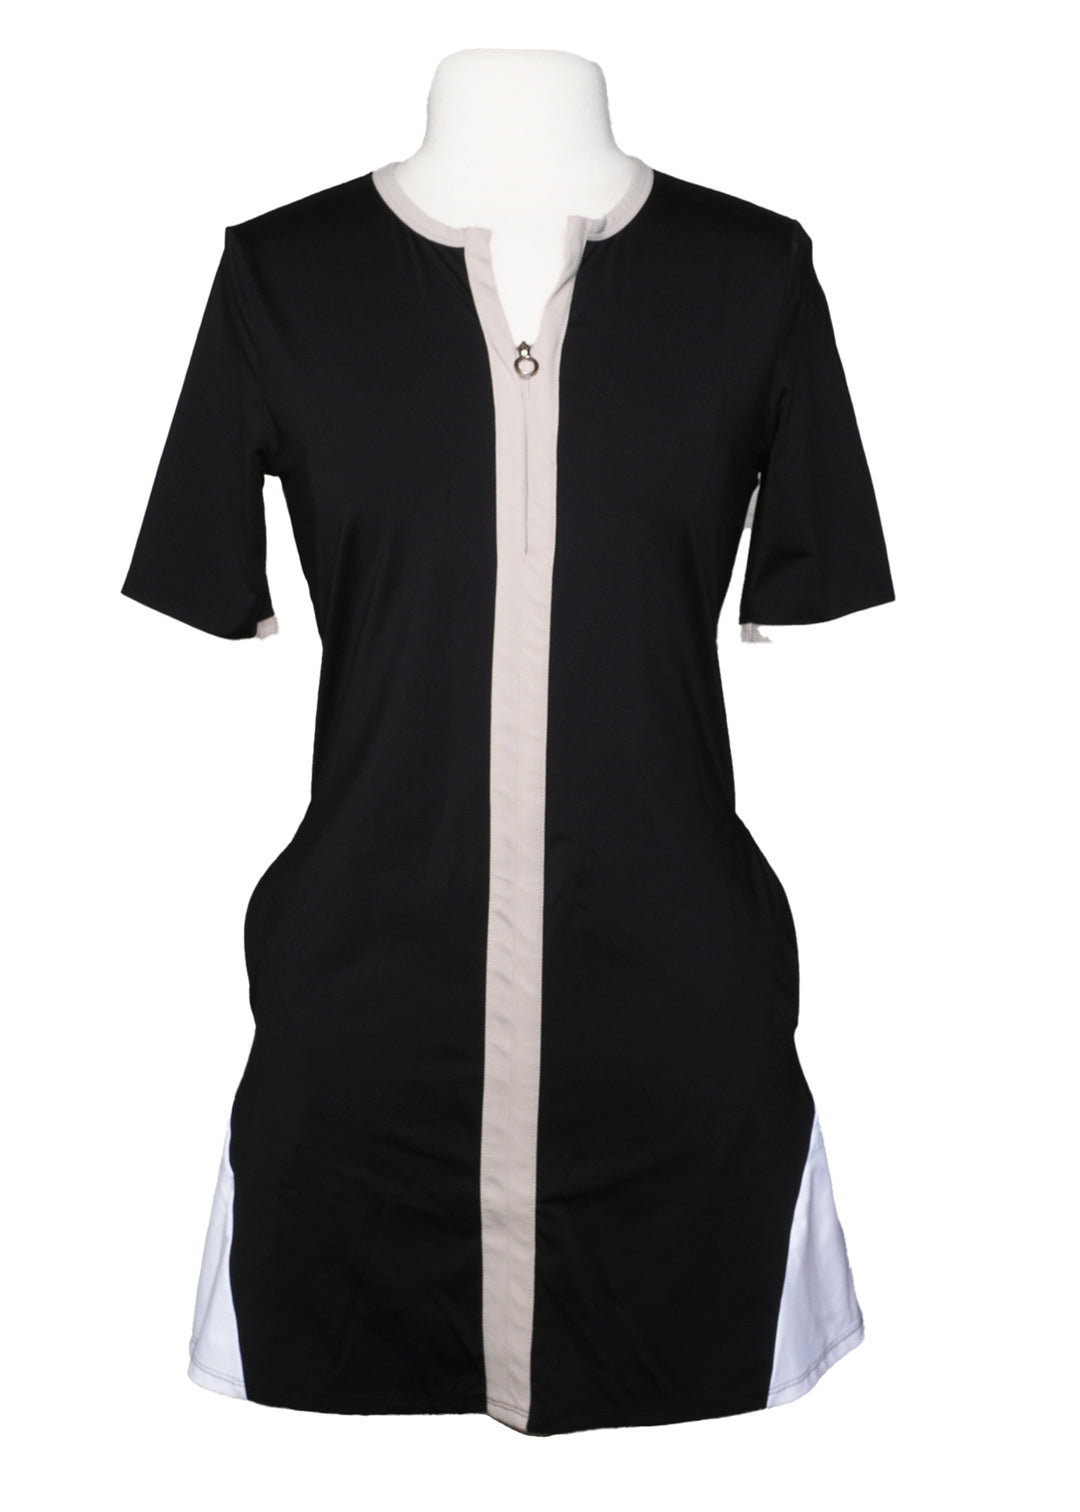 Kinona Golf Dress -  Black  - Size Small - Skorzie